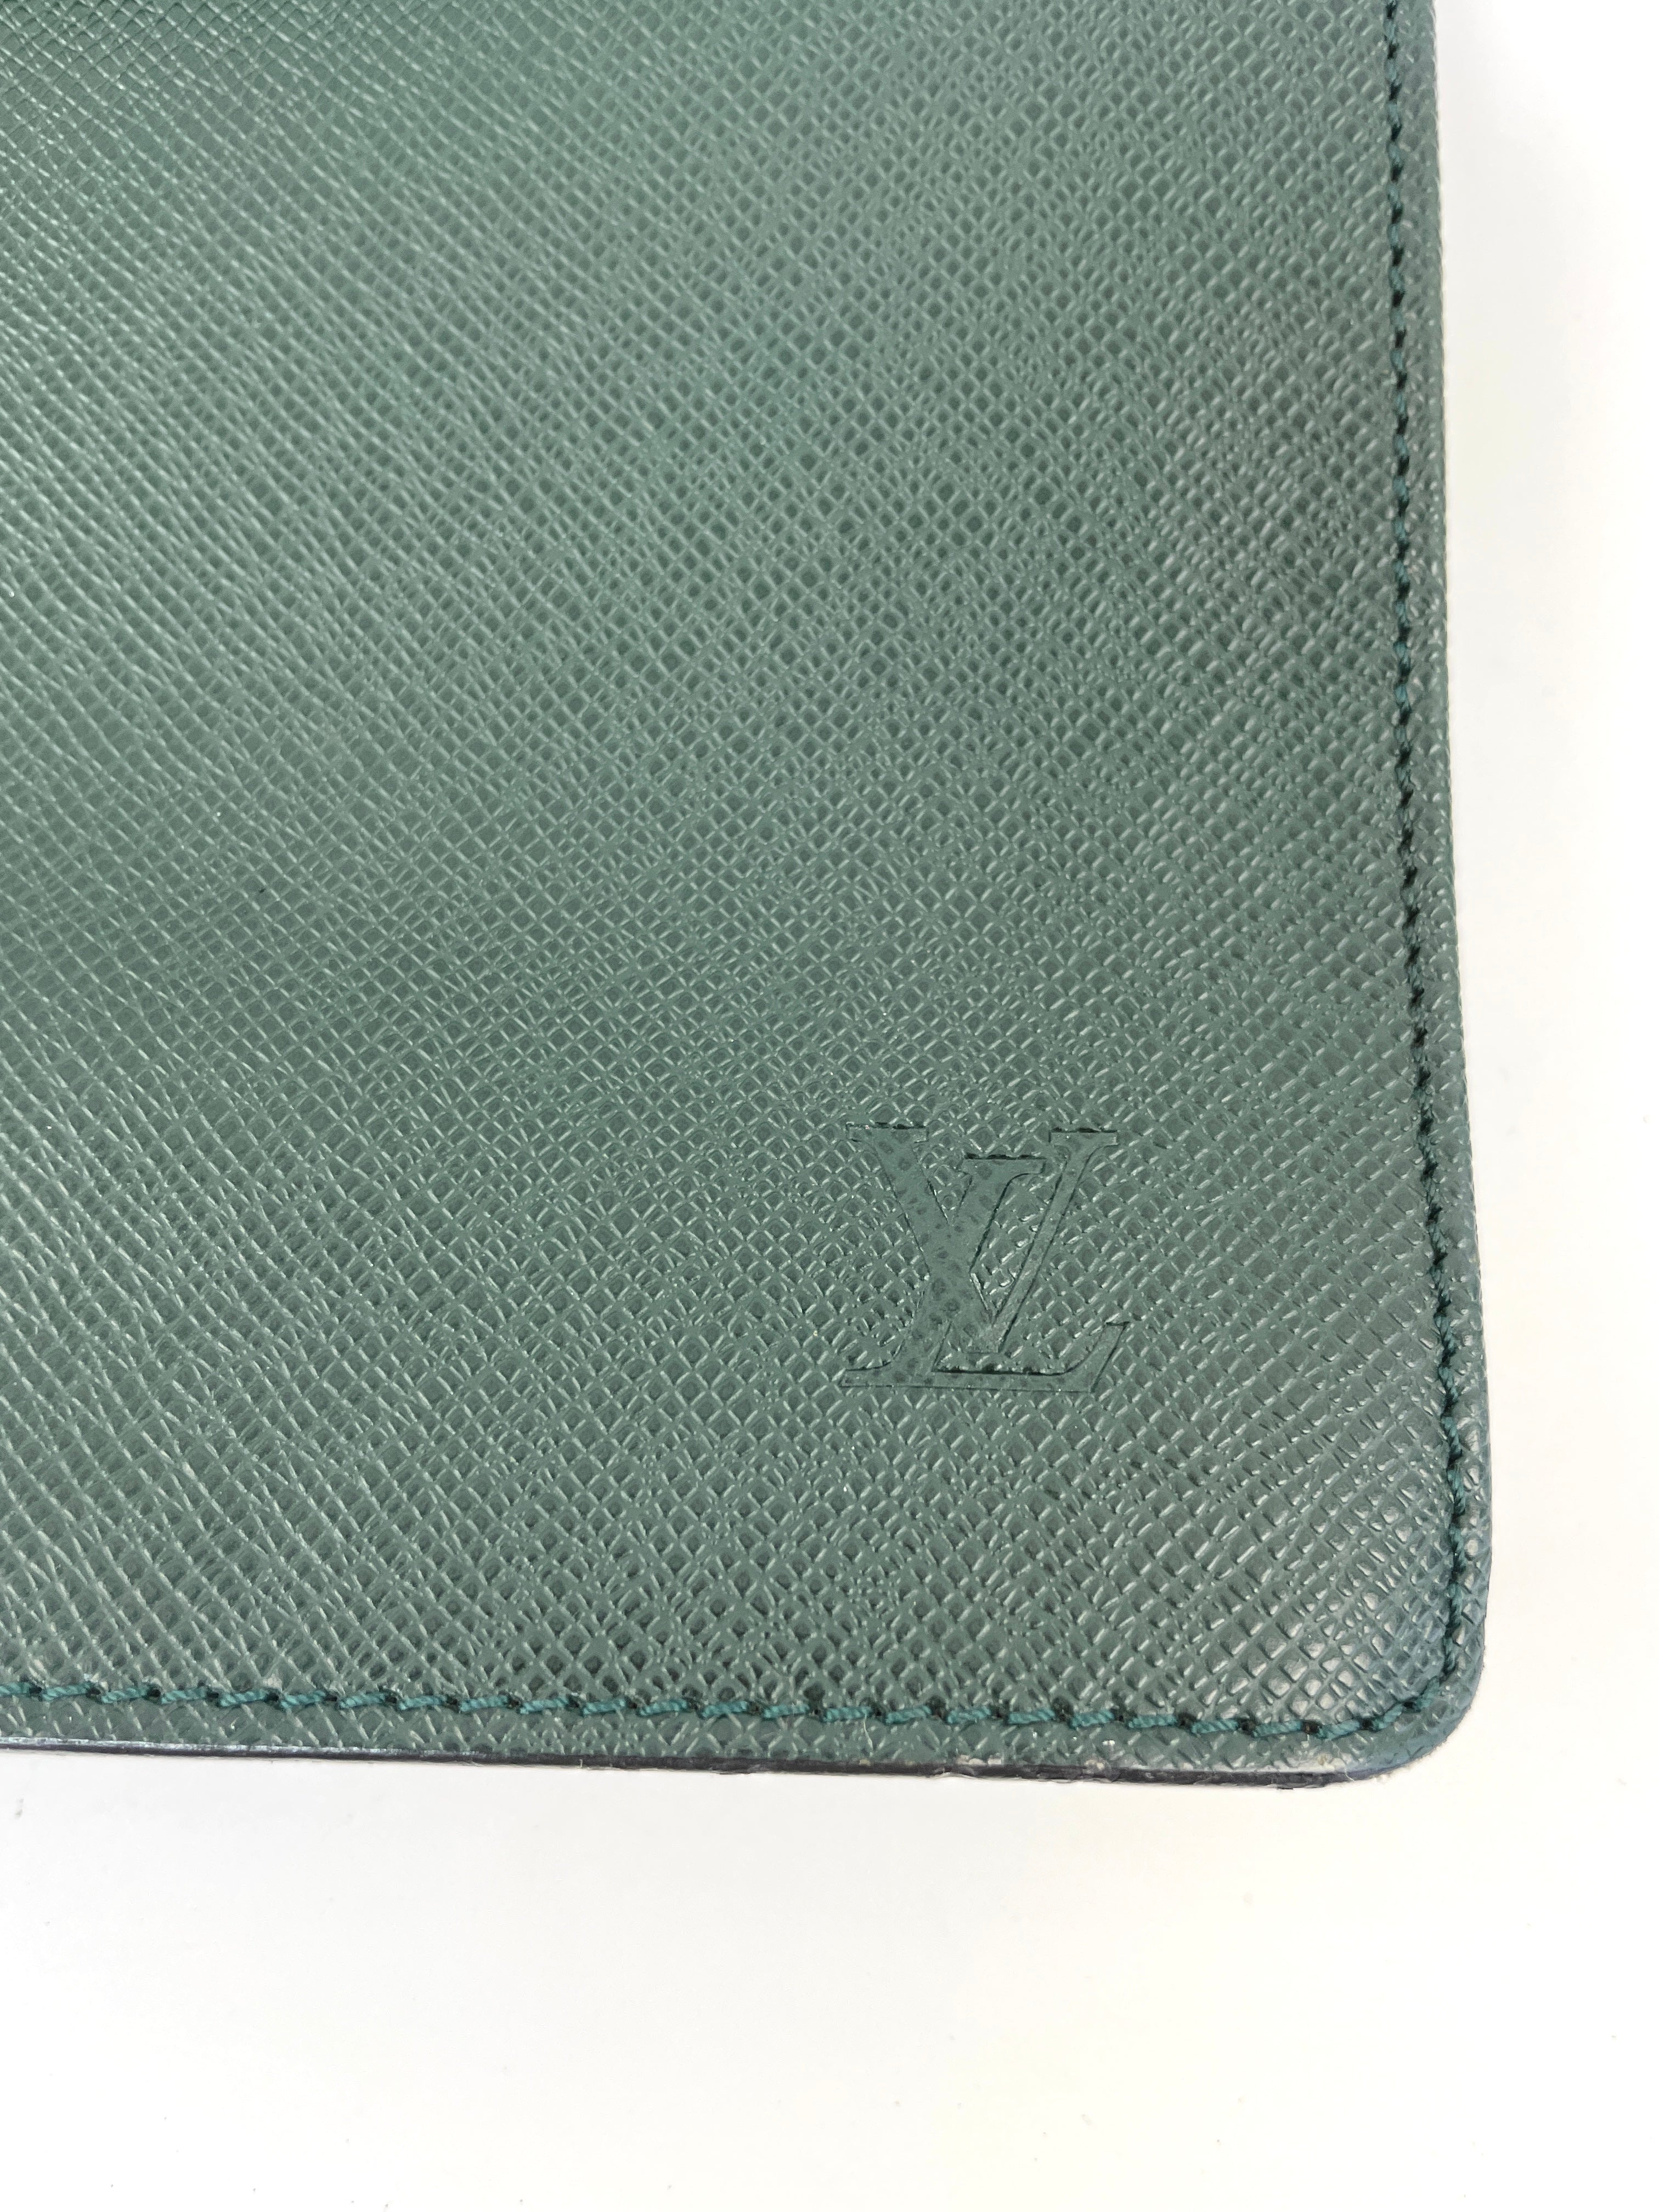 Authentic Louis Vuitton Taiga Kourad Clutch Hand Bag Purse Green